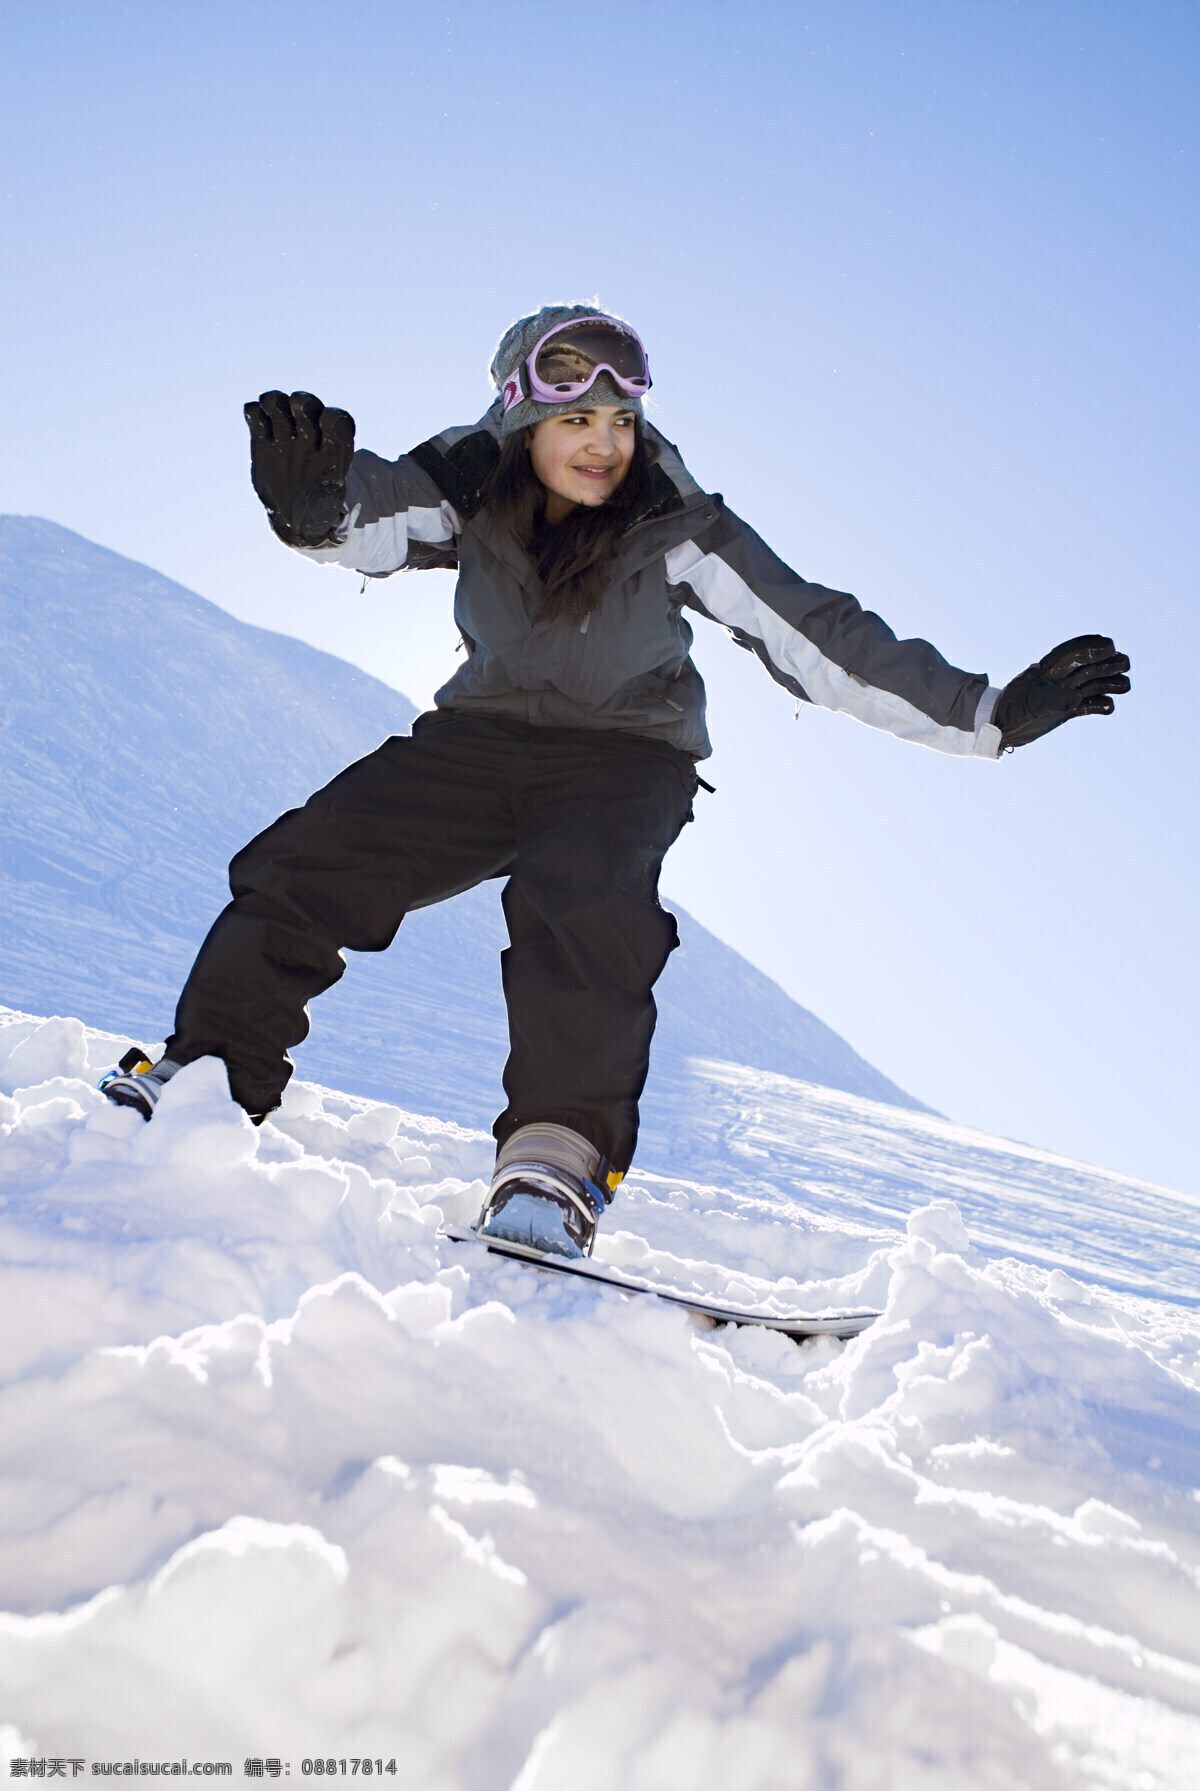 滑雪 撬 美女图片 美女 外国美女 人物 雪地 雪撬 滑雪图片 生活百科